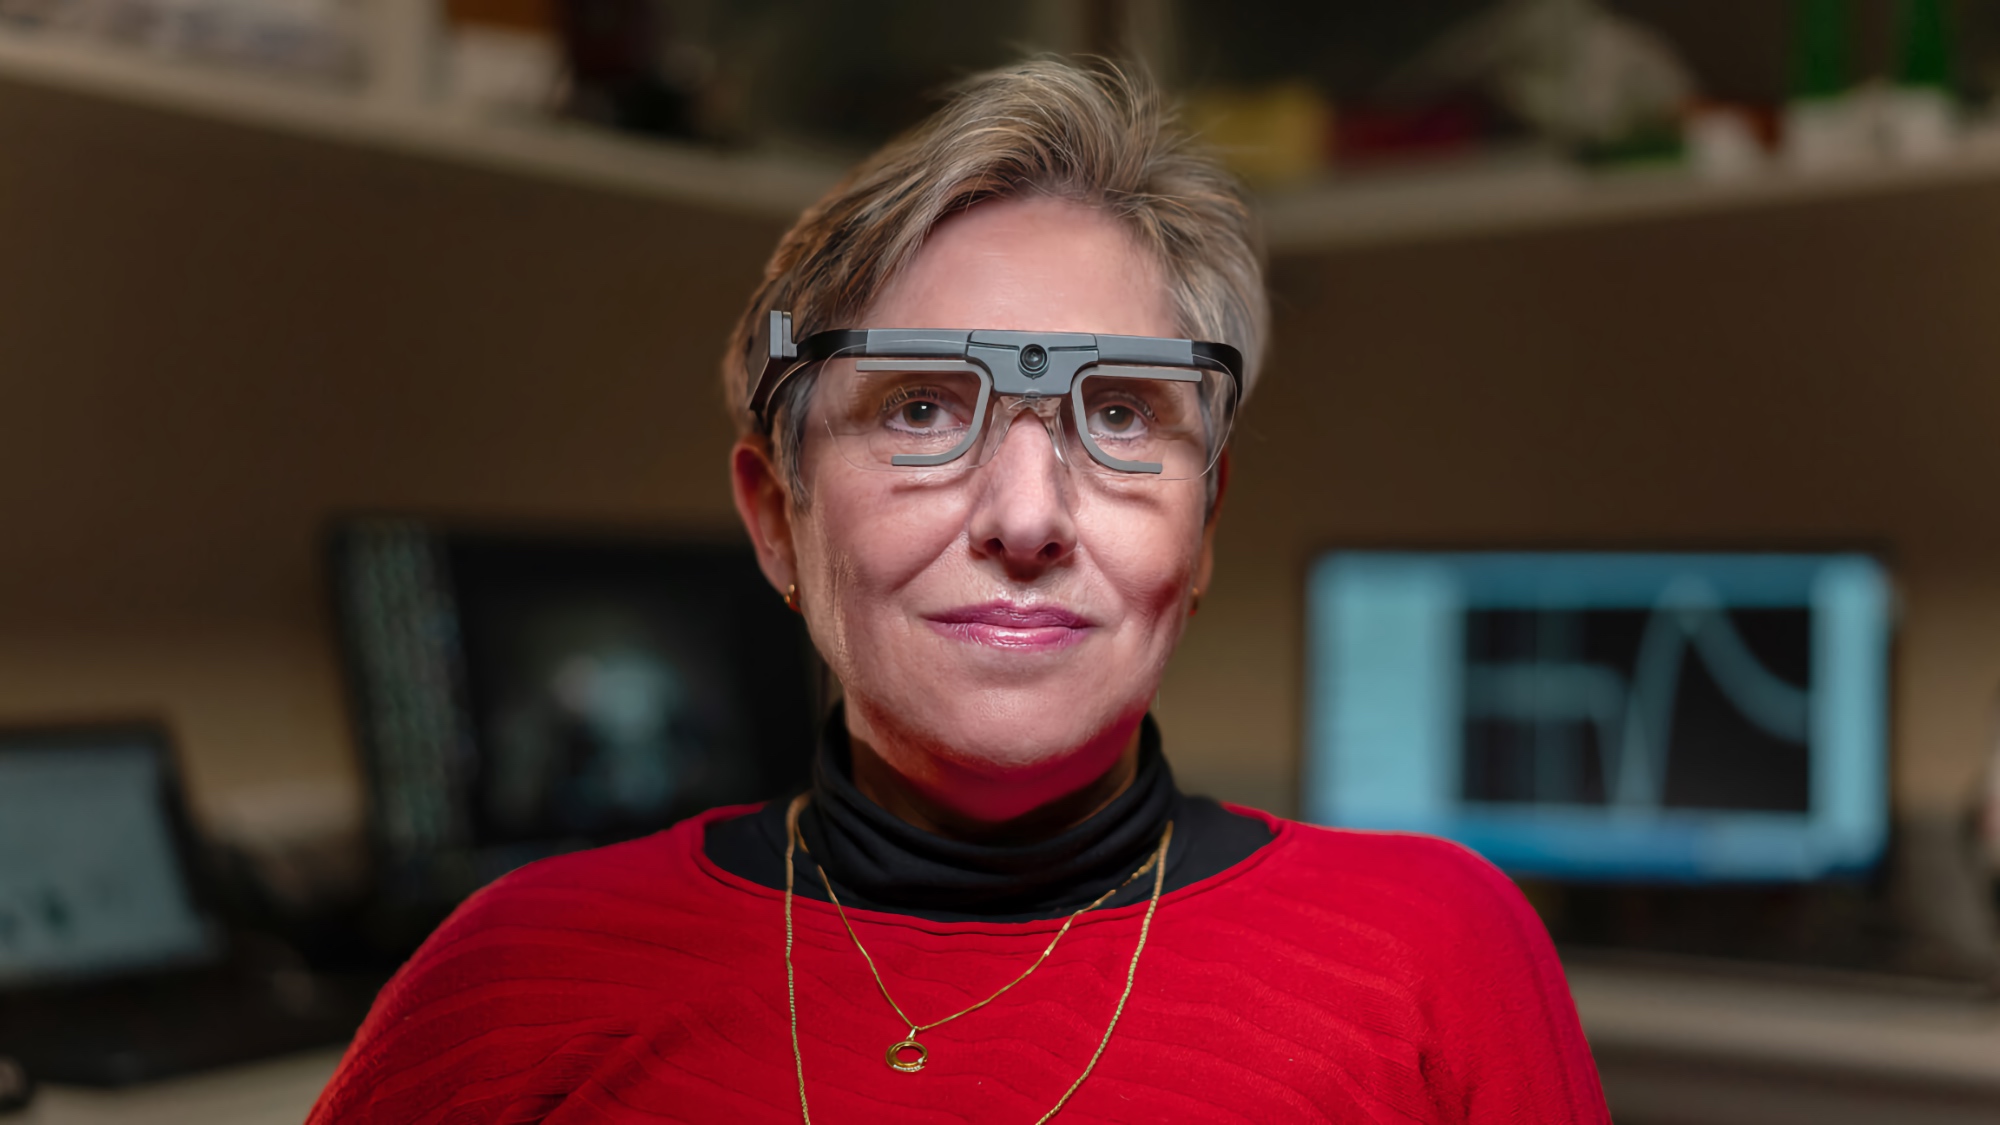 Naukowcy stworzyli sztuczny wzrok który pozwala widzieć niewidomym